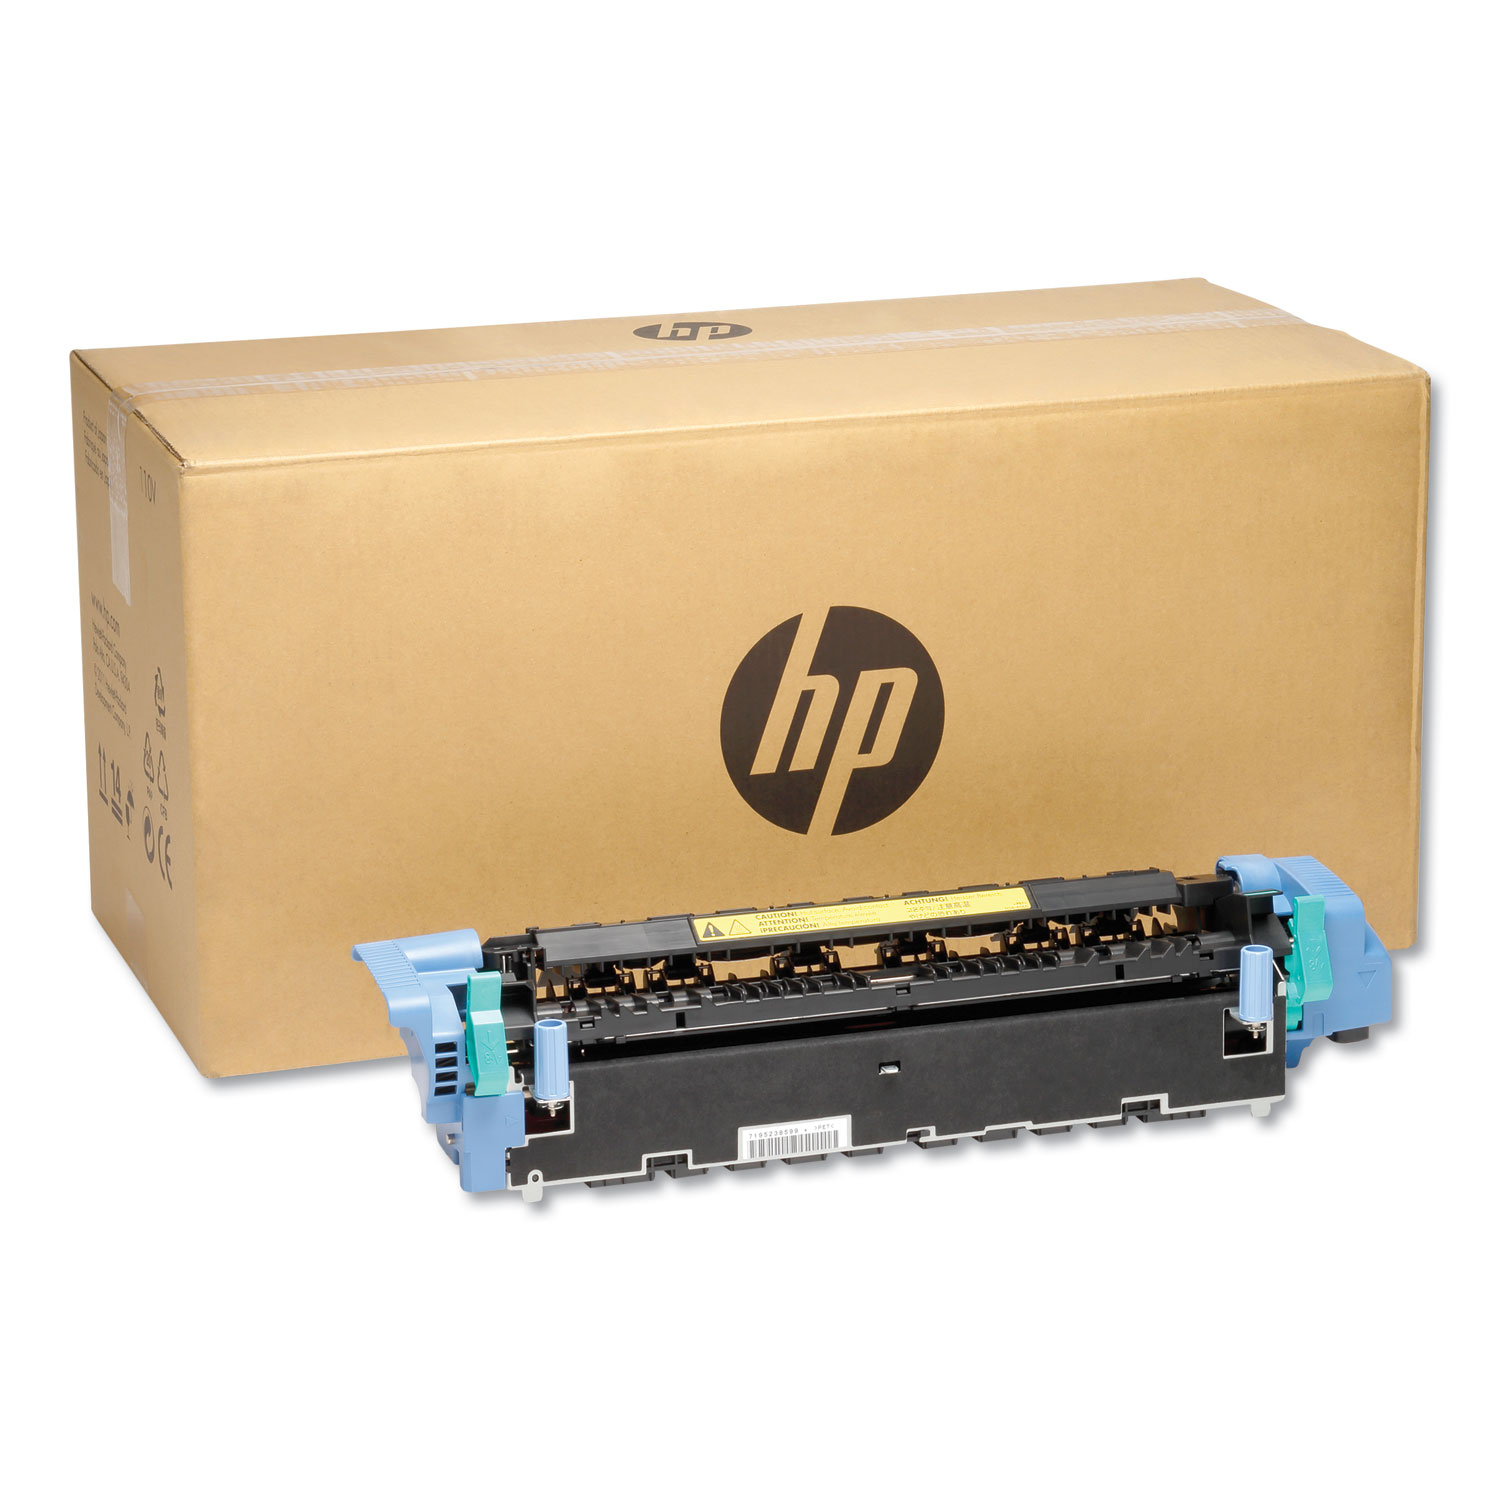 Reparar Fusor HP LaserJet
